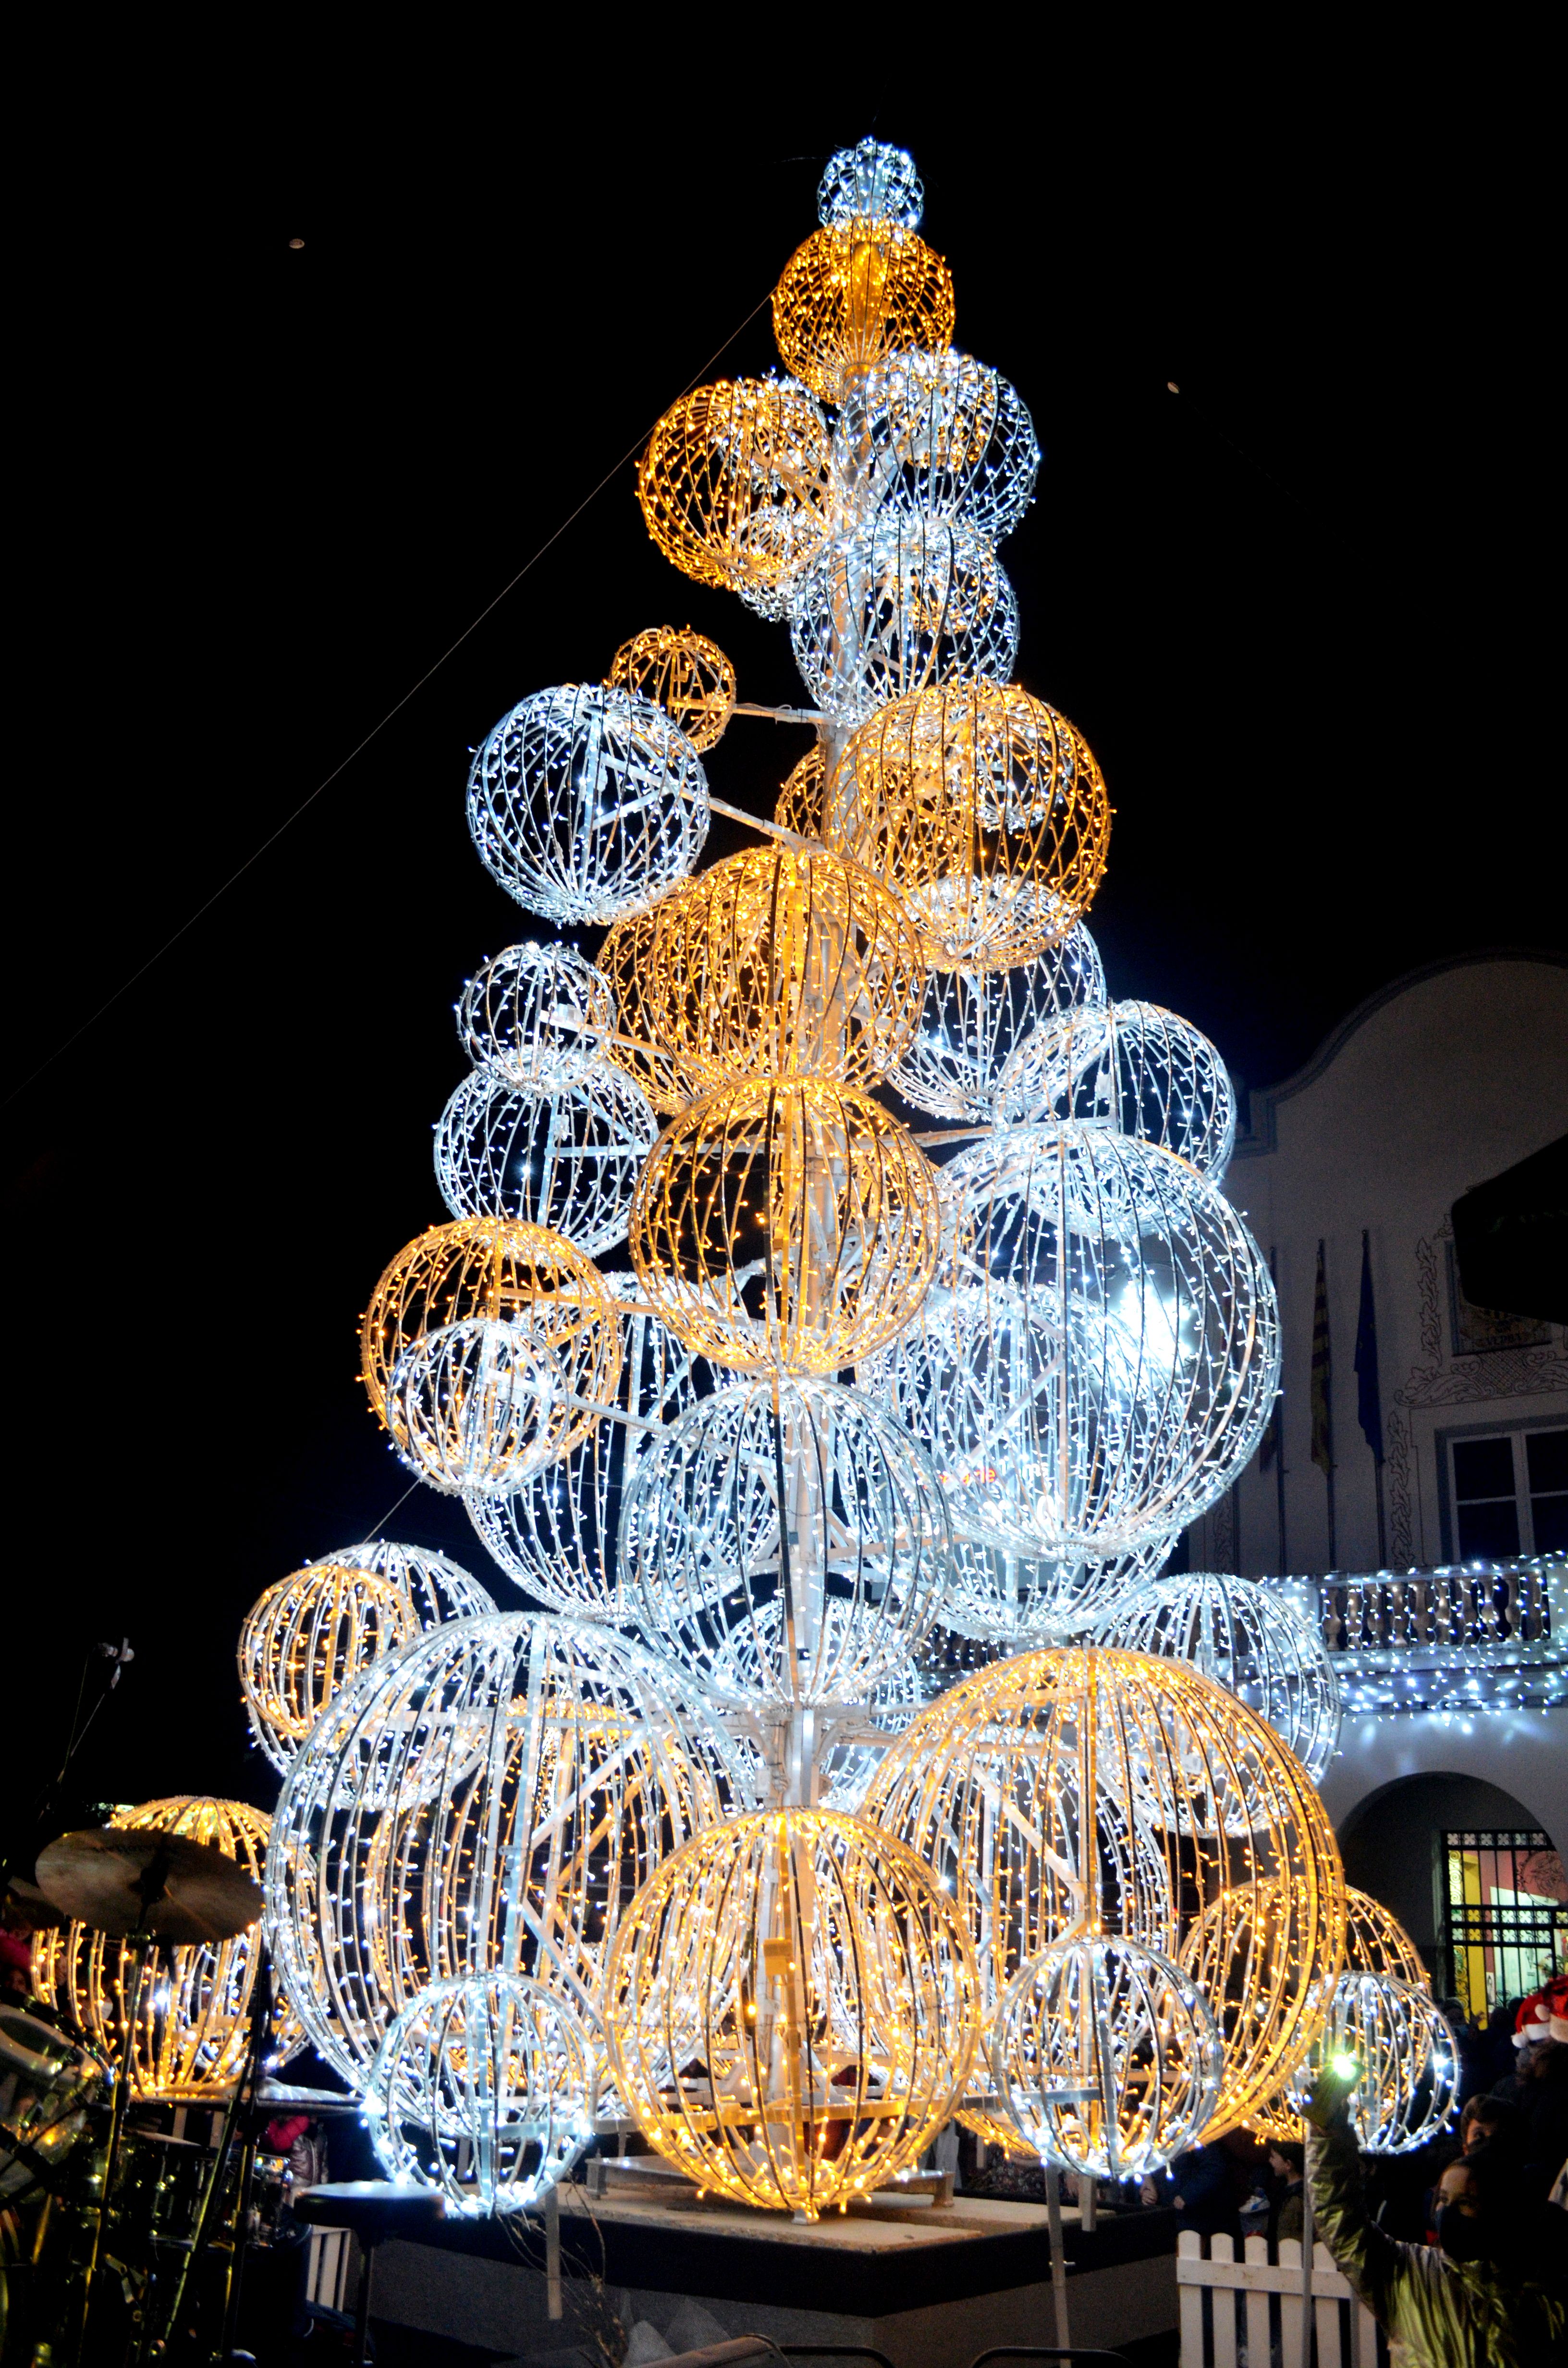 Encesa dels llums de Nadal a Cerdanyola. FOTO: Pau Berenguer